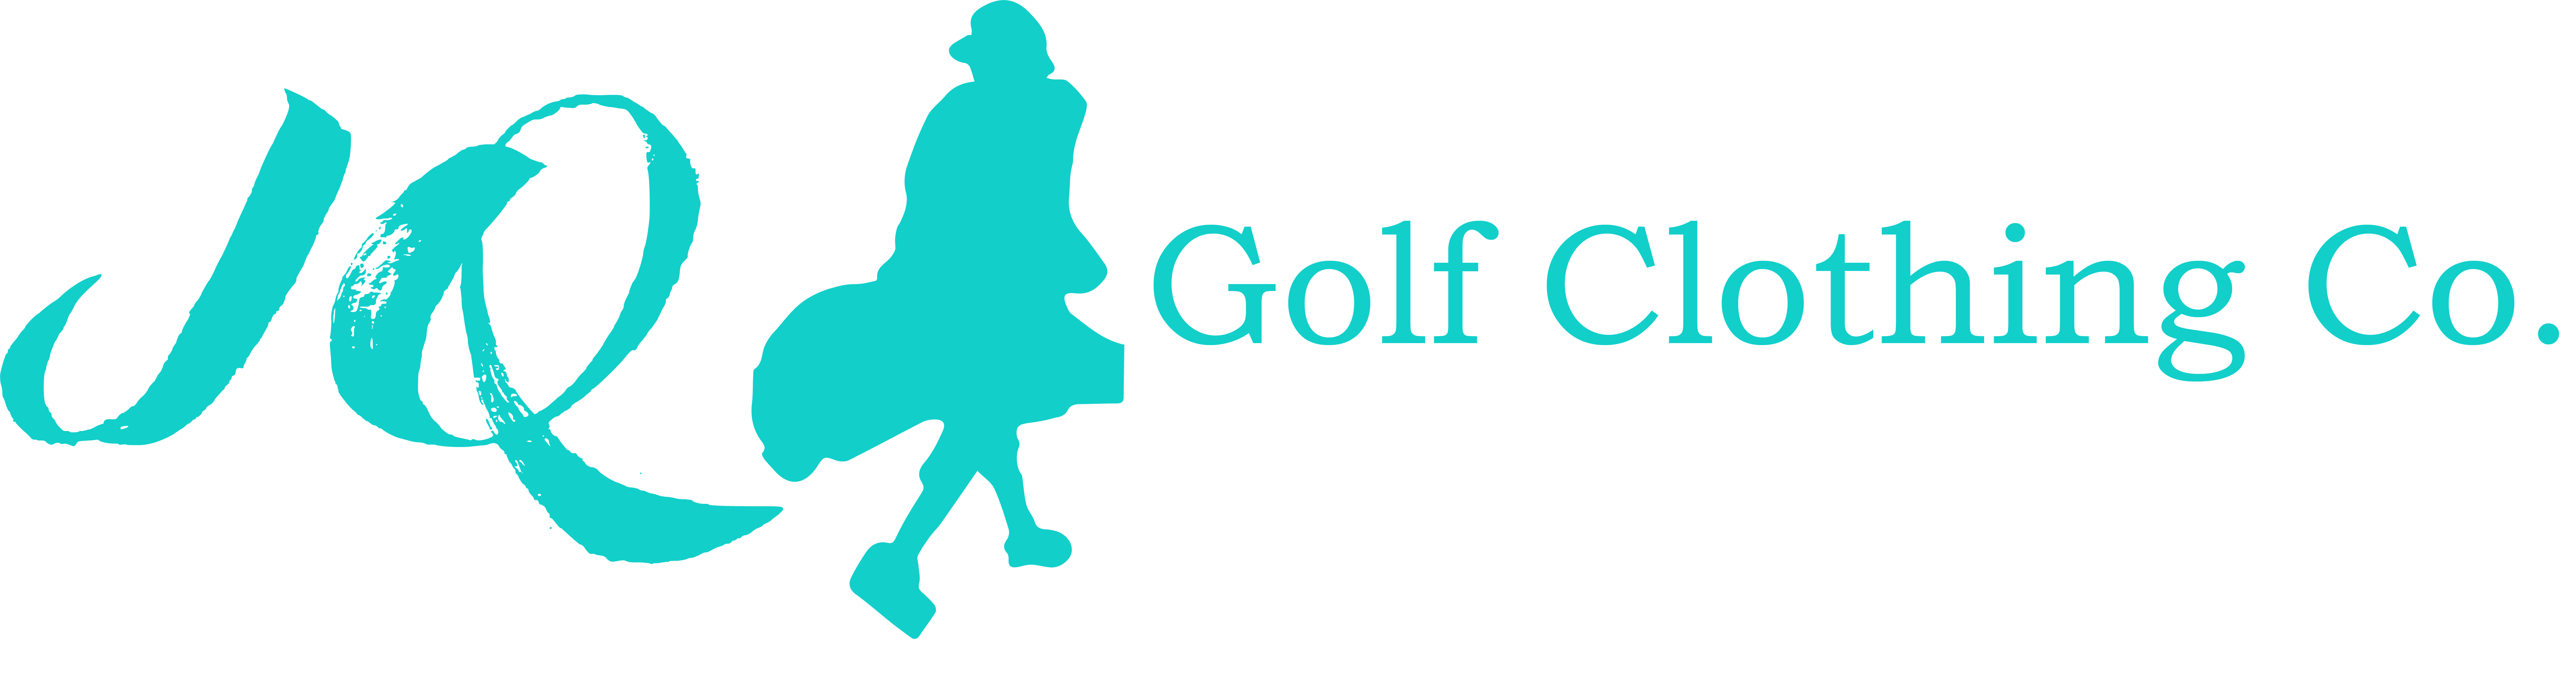 JQ Golf Clothing Co.